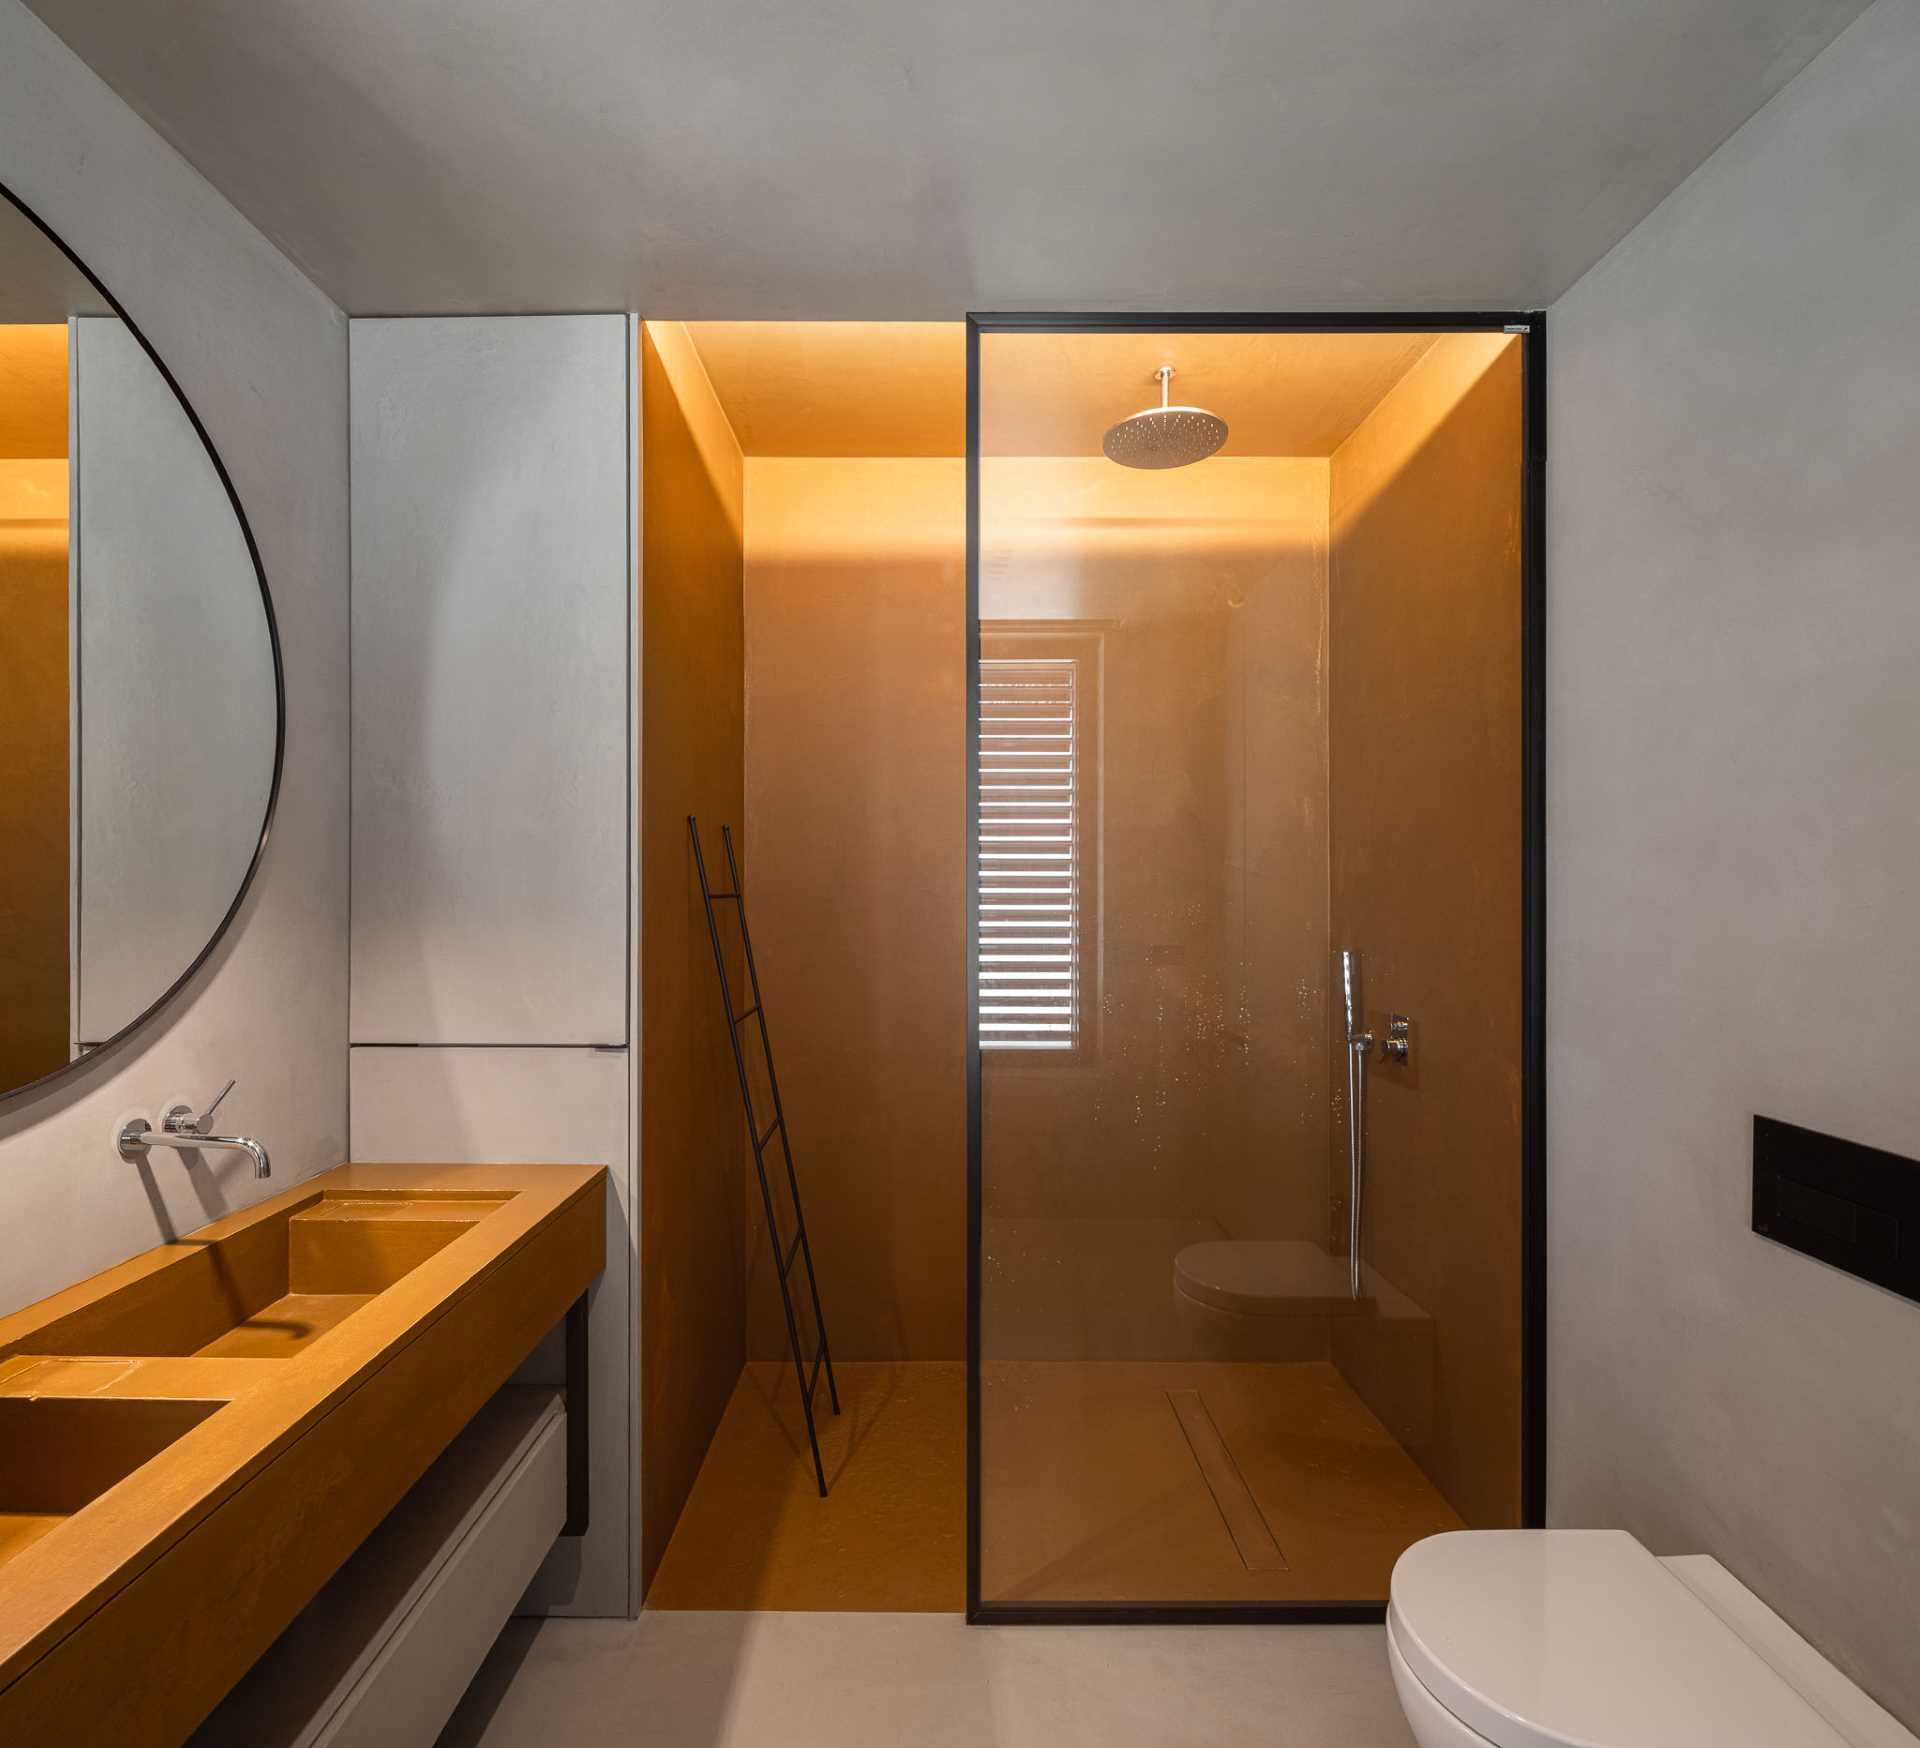 A modern bathroom with a walk-in shower.